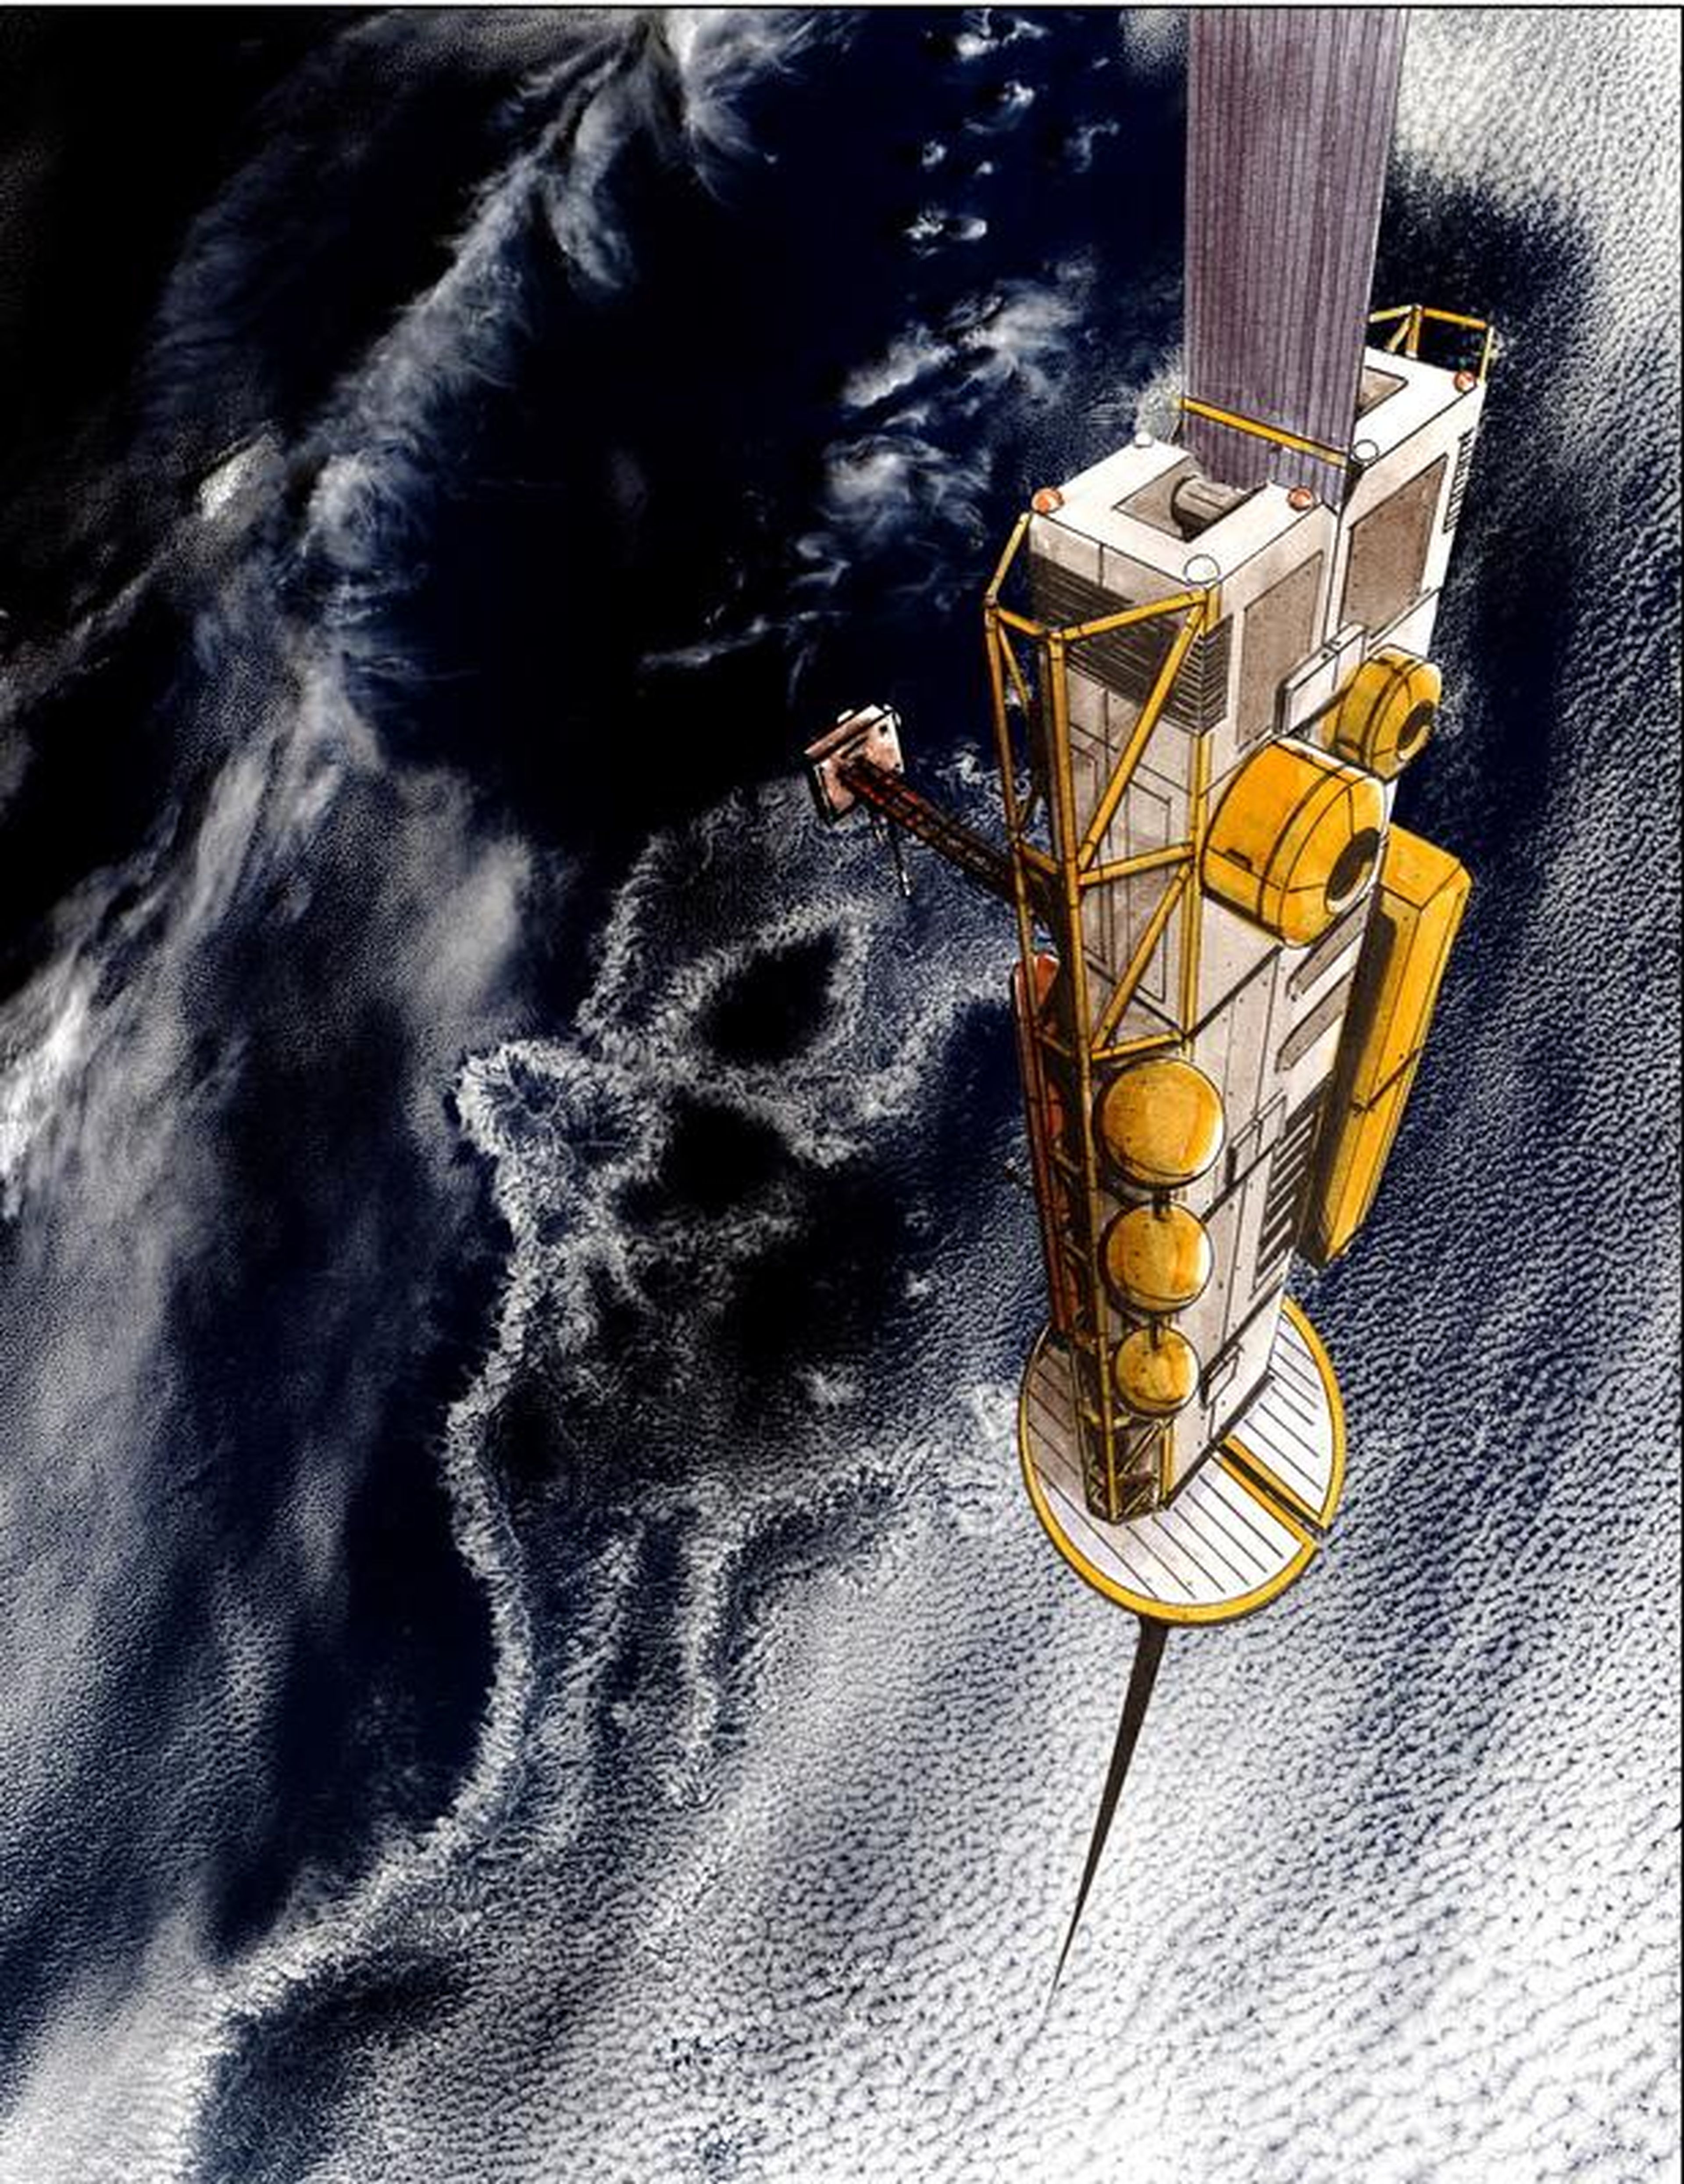 En la visión de LiftPort, el escalador probablemente viajaría arriba y abajo de la correa usando electricidad. Esta representación artística muestra cómo podría ser.